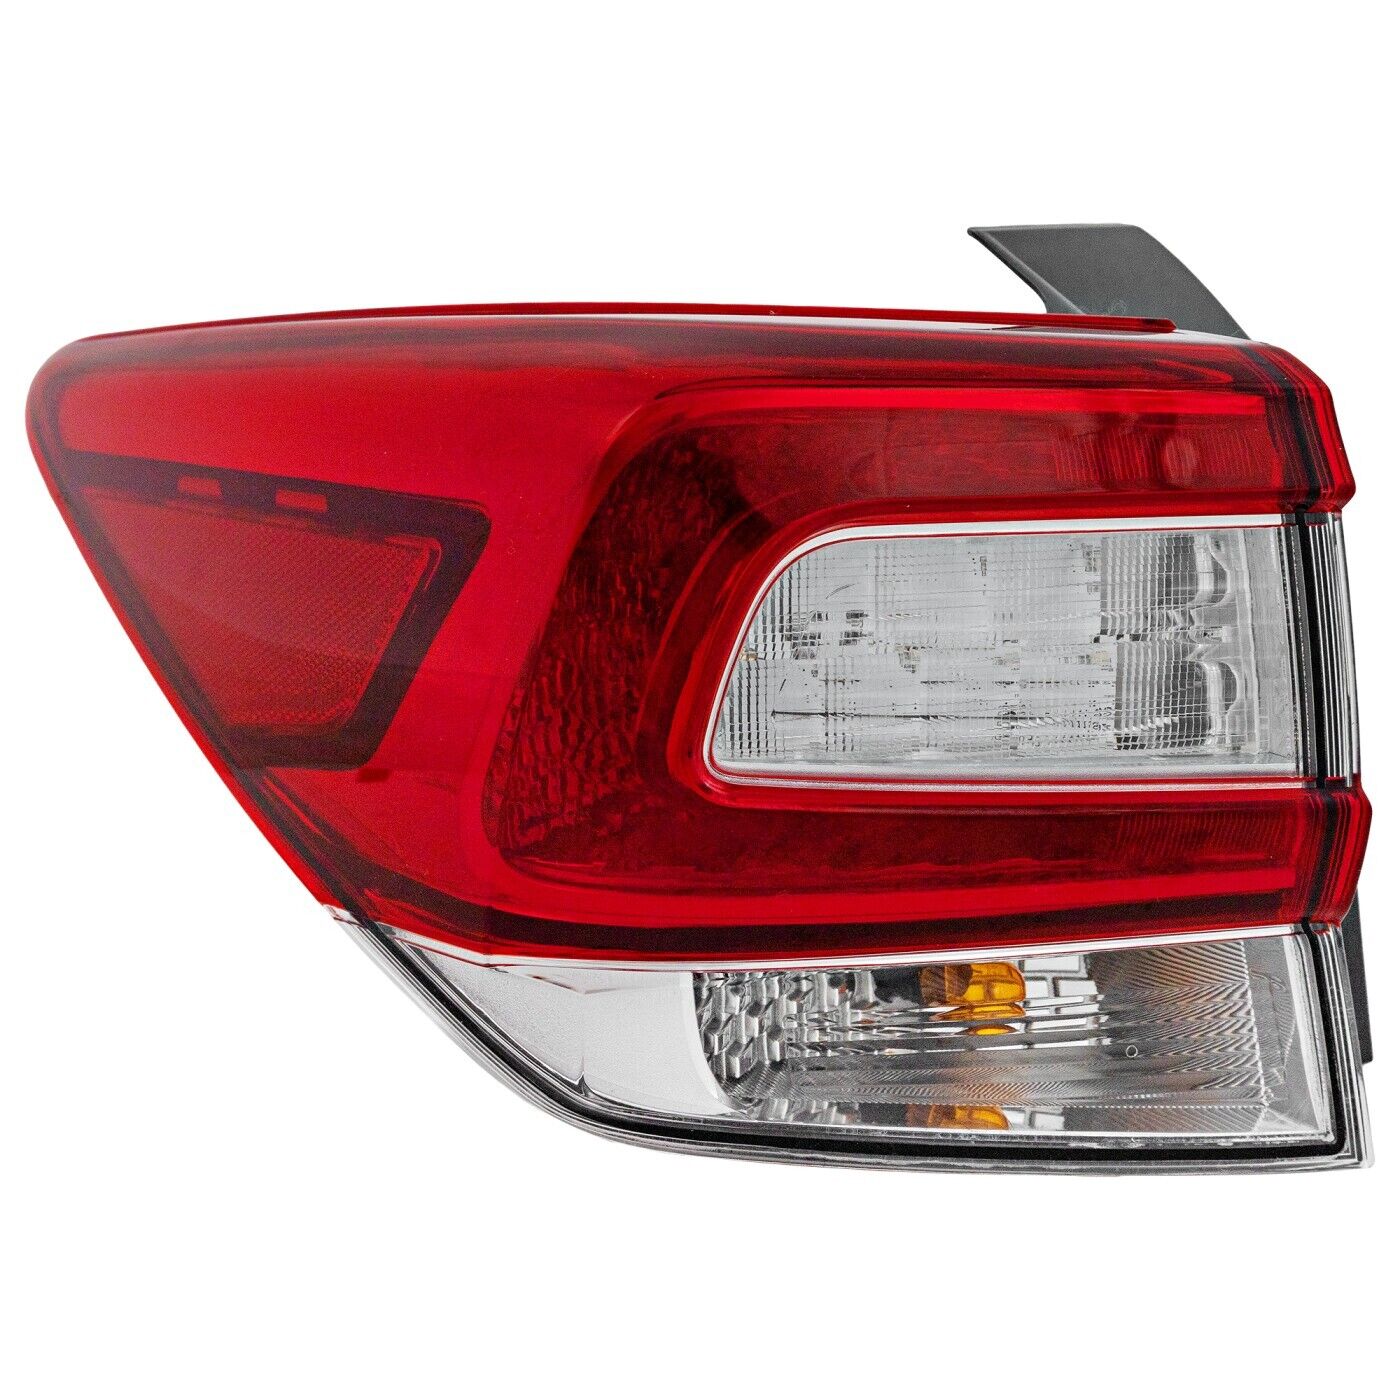 Tail Light For 17-19 Subaru Impreza Hatchback 18-19 Crosstrek Left Side Outer